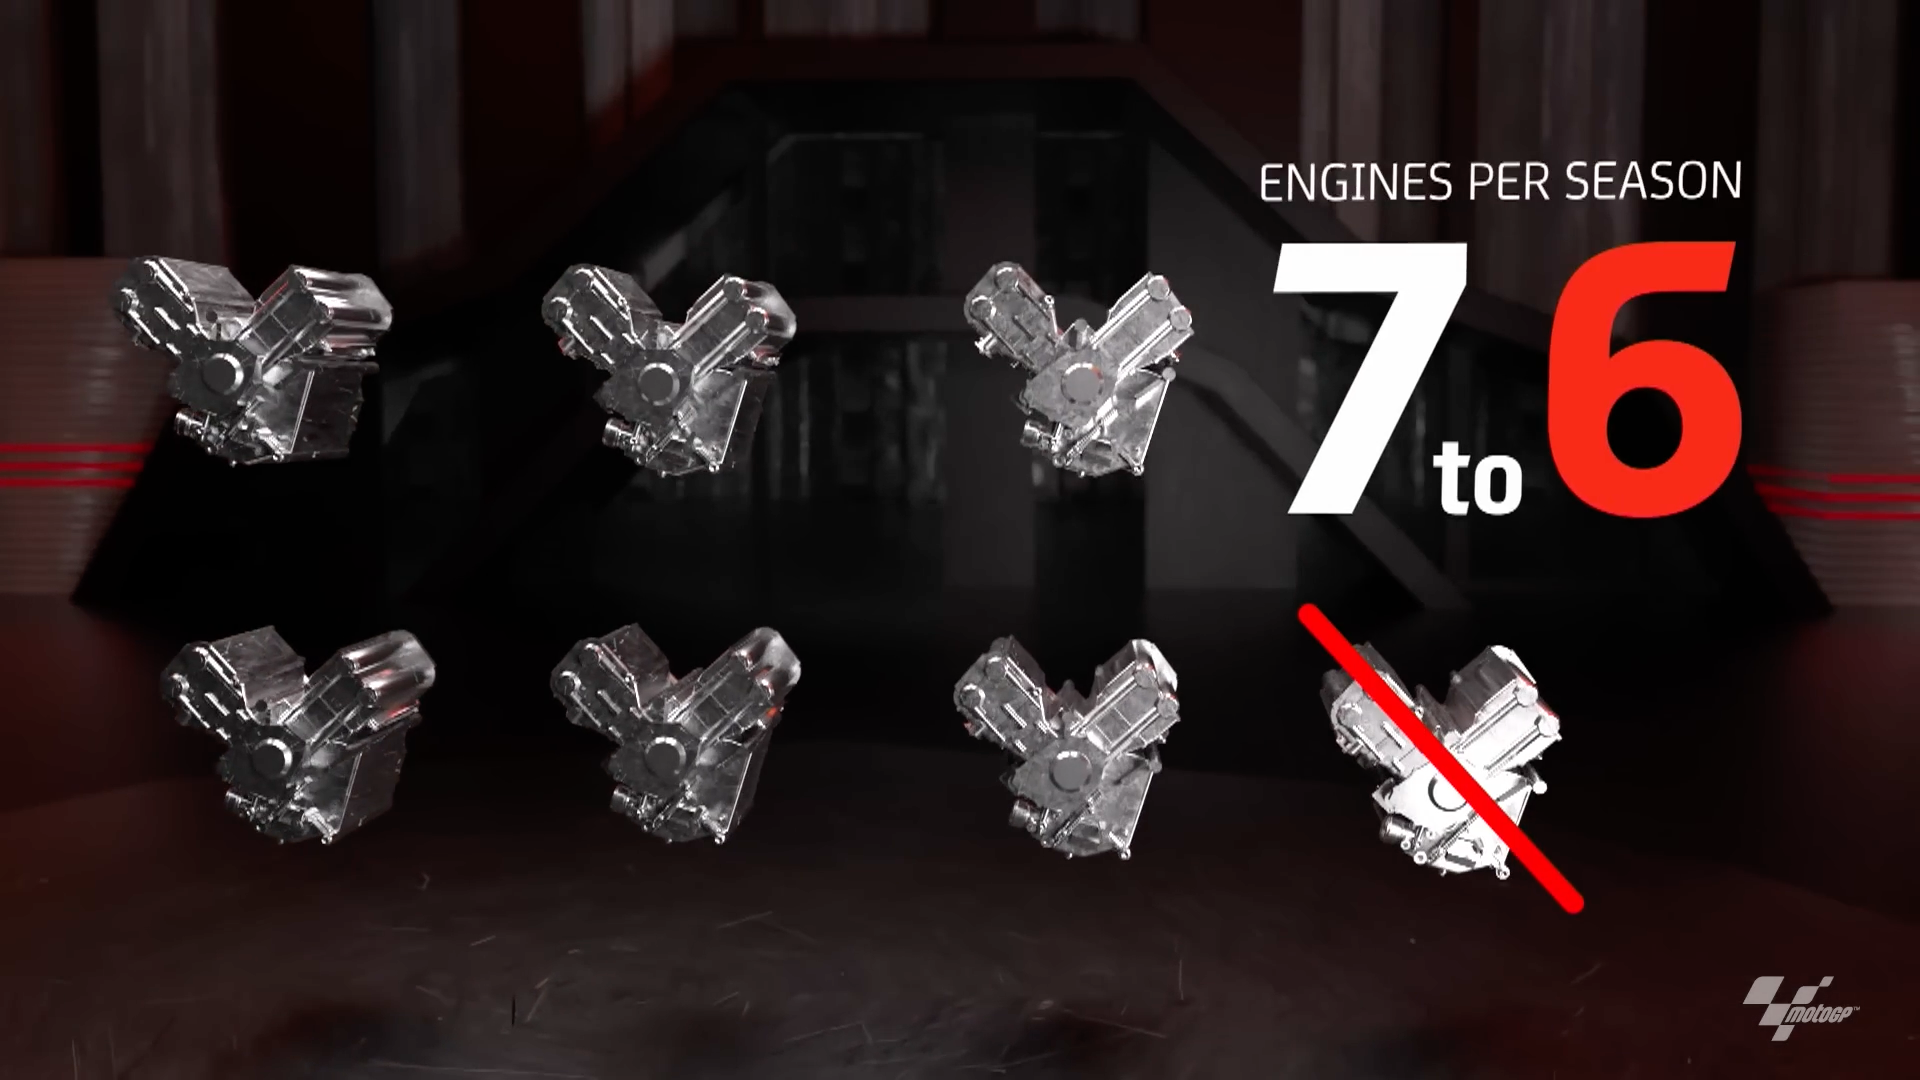 每季的引擎數量也從7具下調至6具，但如果賽季超過20站，則會上修至7具